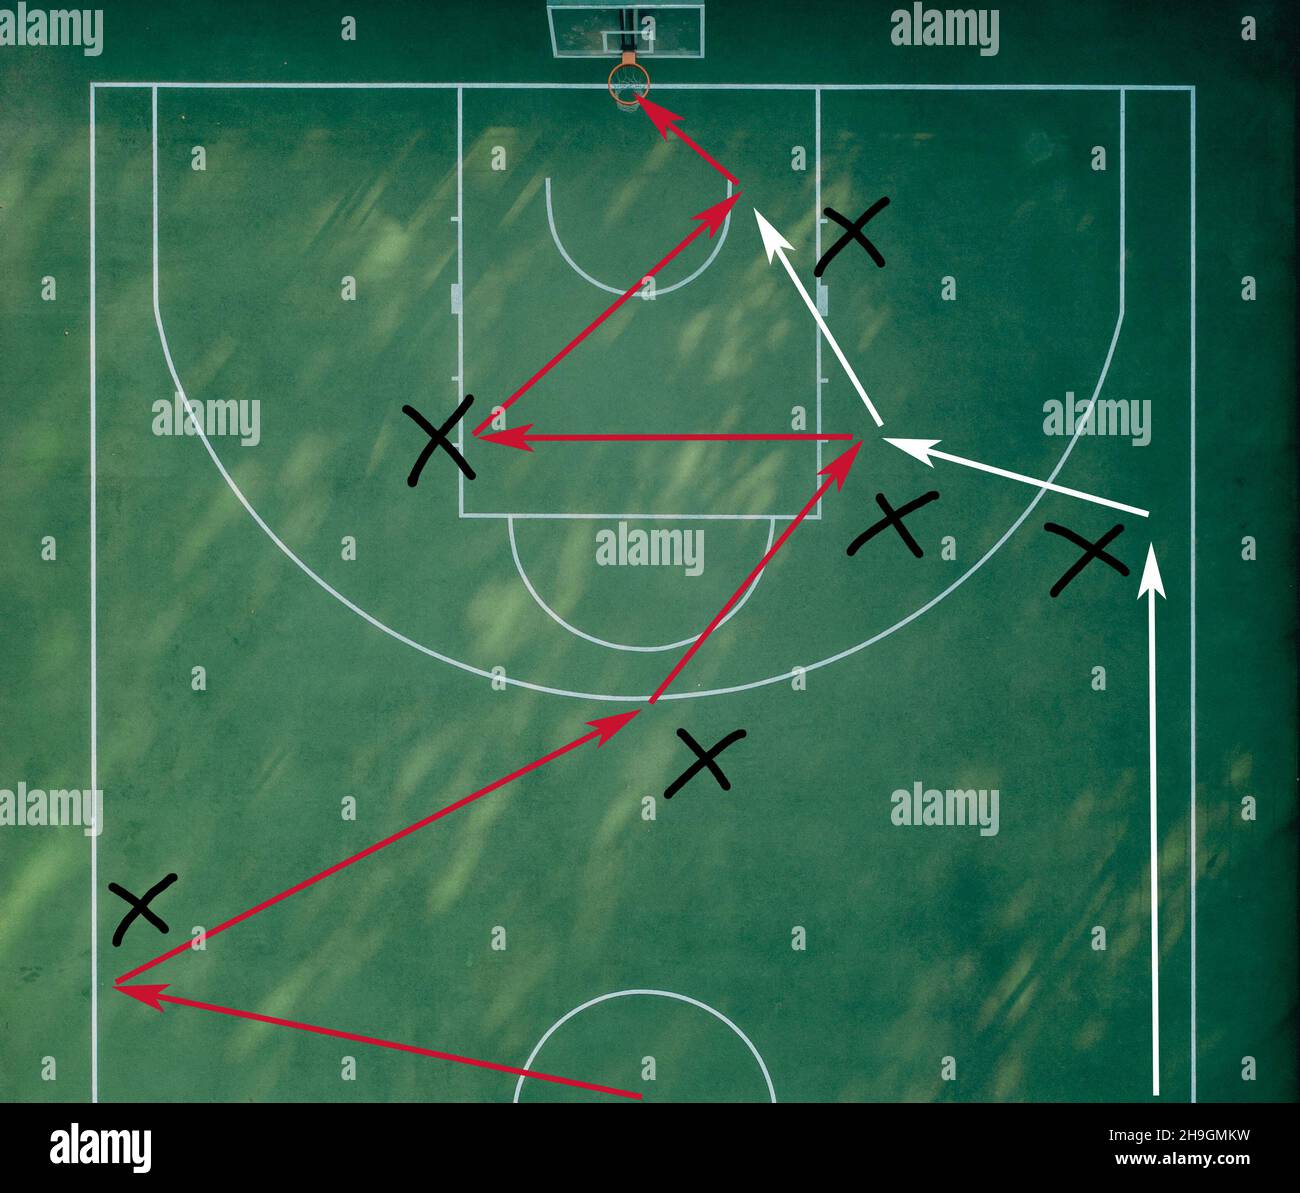 Tácticas y Estrategia de Ataque en Baloncesto: Un Diagrama con Flechas en  una cancha de Baloncesto. Aprender a jugar al baloncesto. Plan Ofensivo Del  Juego Del Baloncesto: Esquema para lanzar la bola